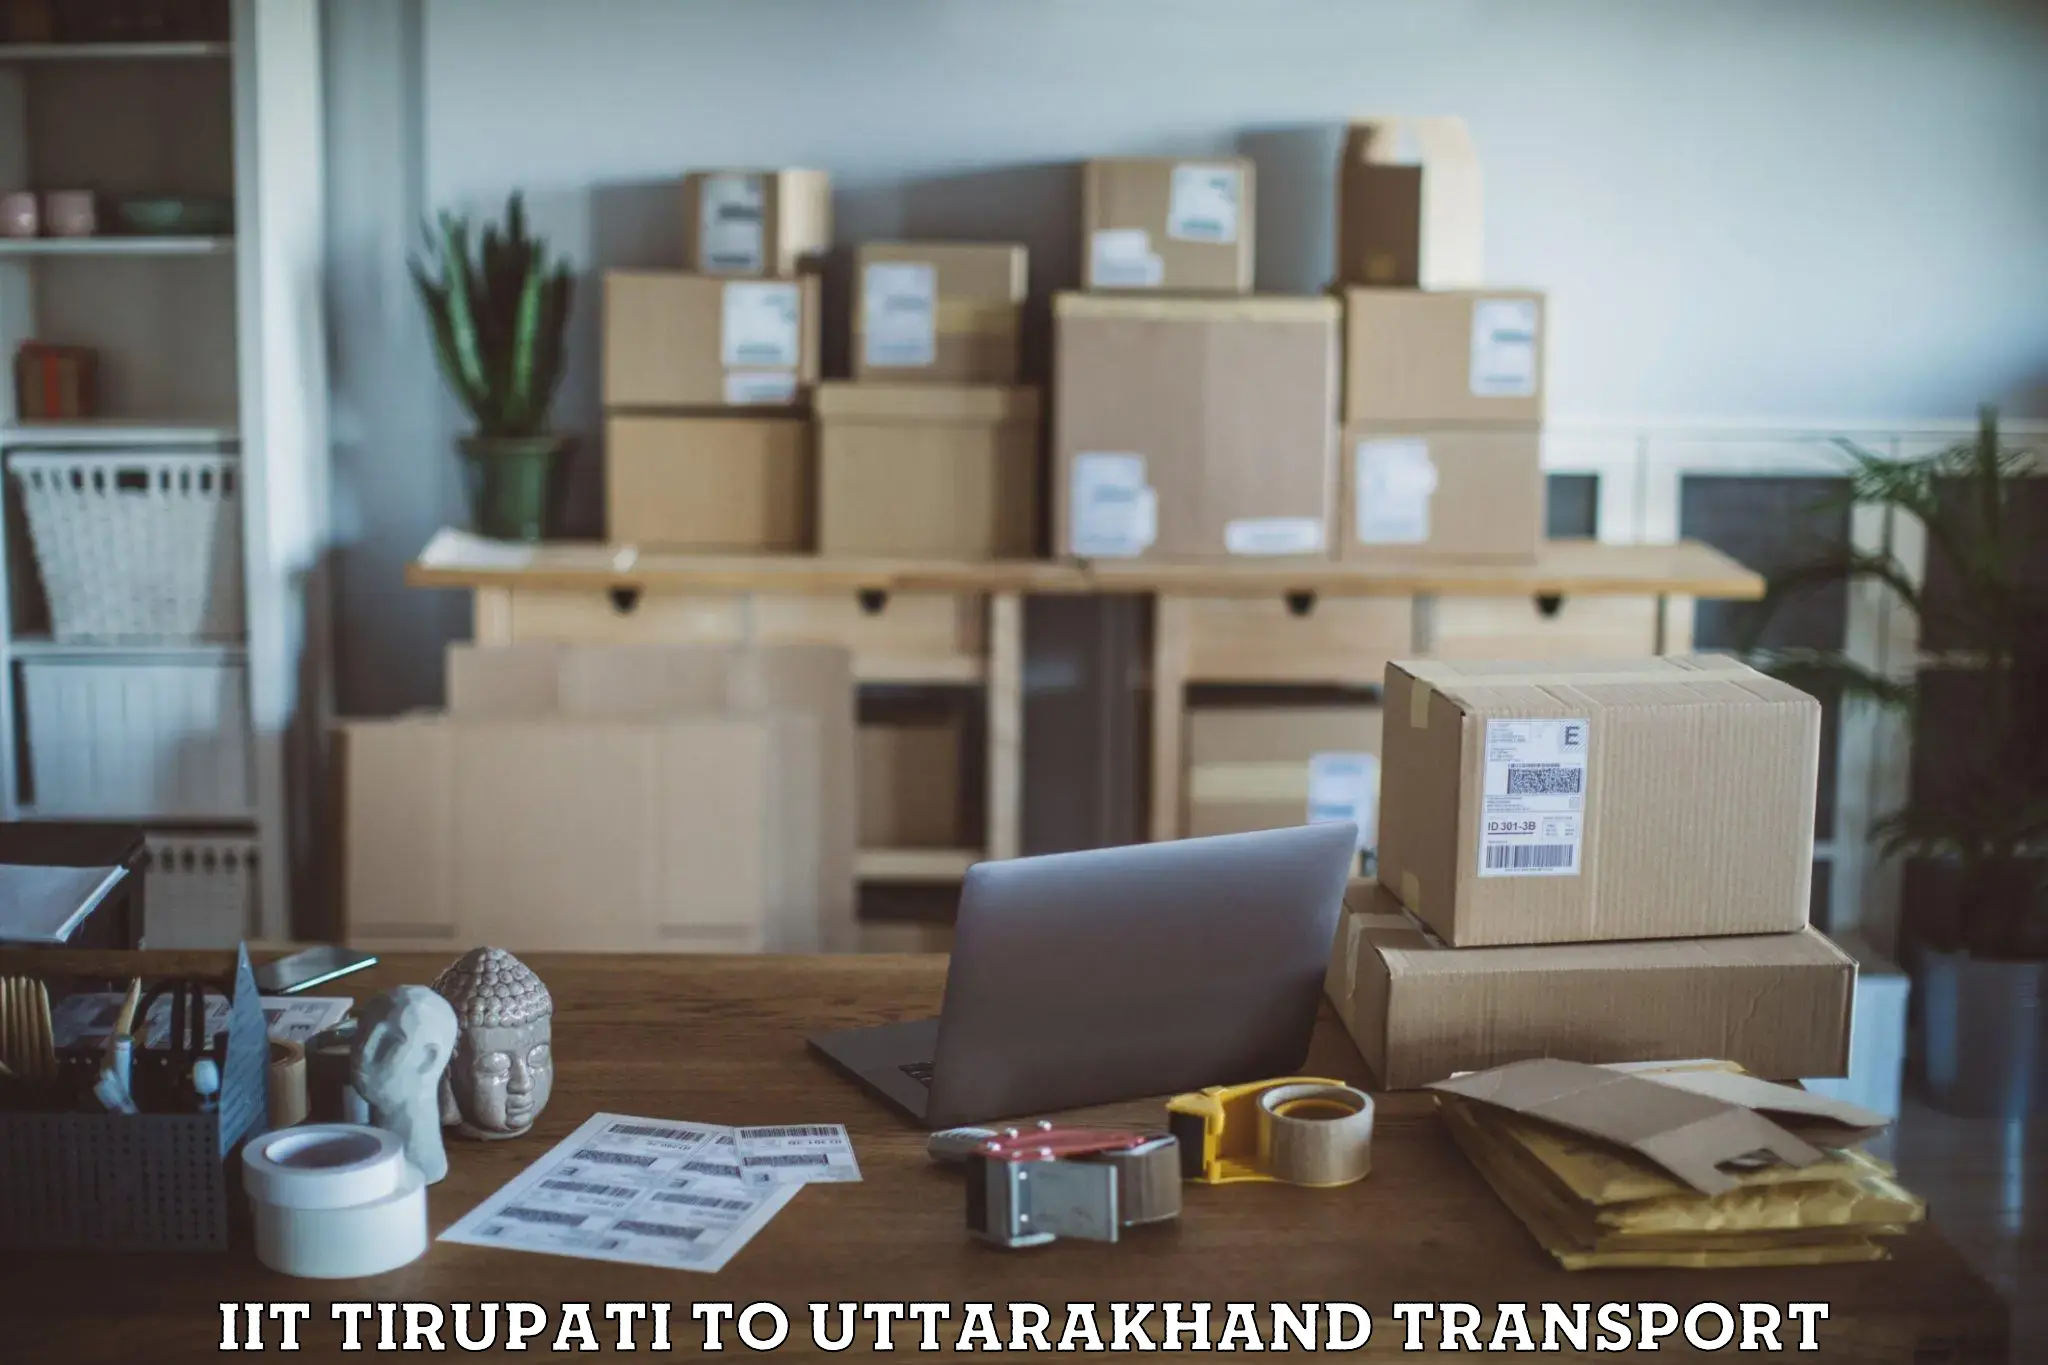 Nearest transport service IIT Tirupati to Didihat